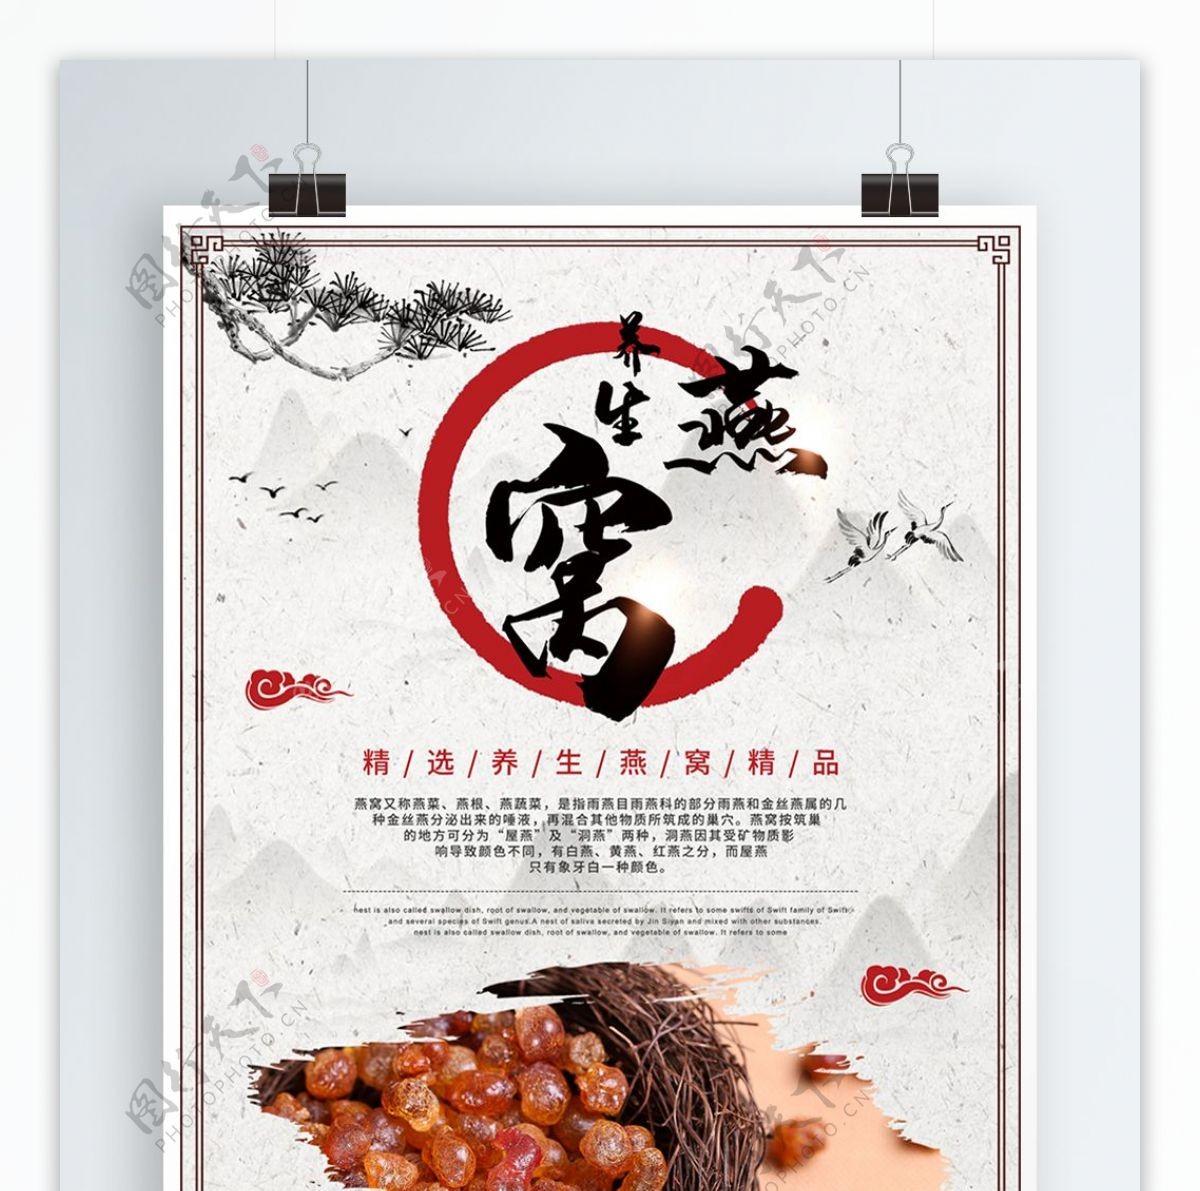 中国风养生食品补品燕窝美食海报